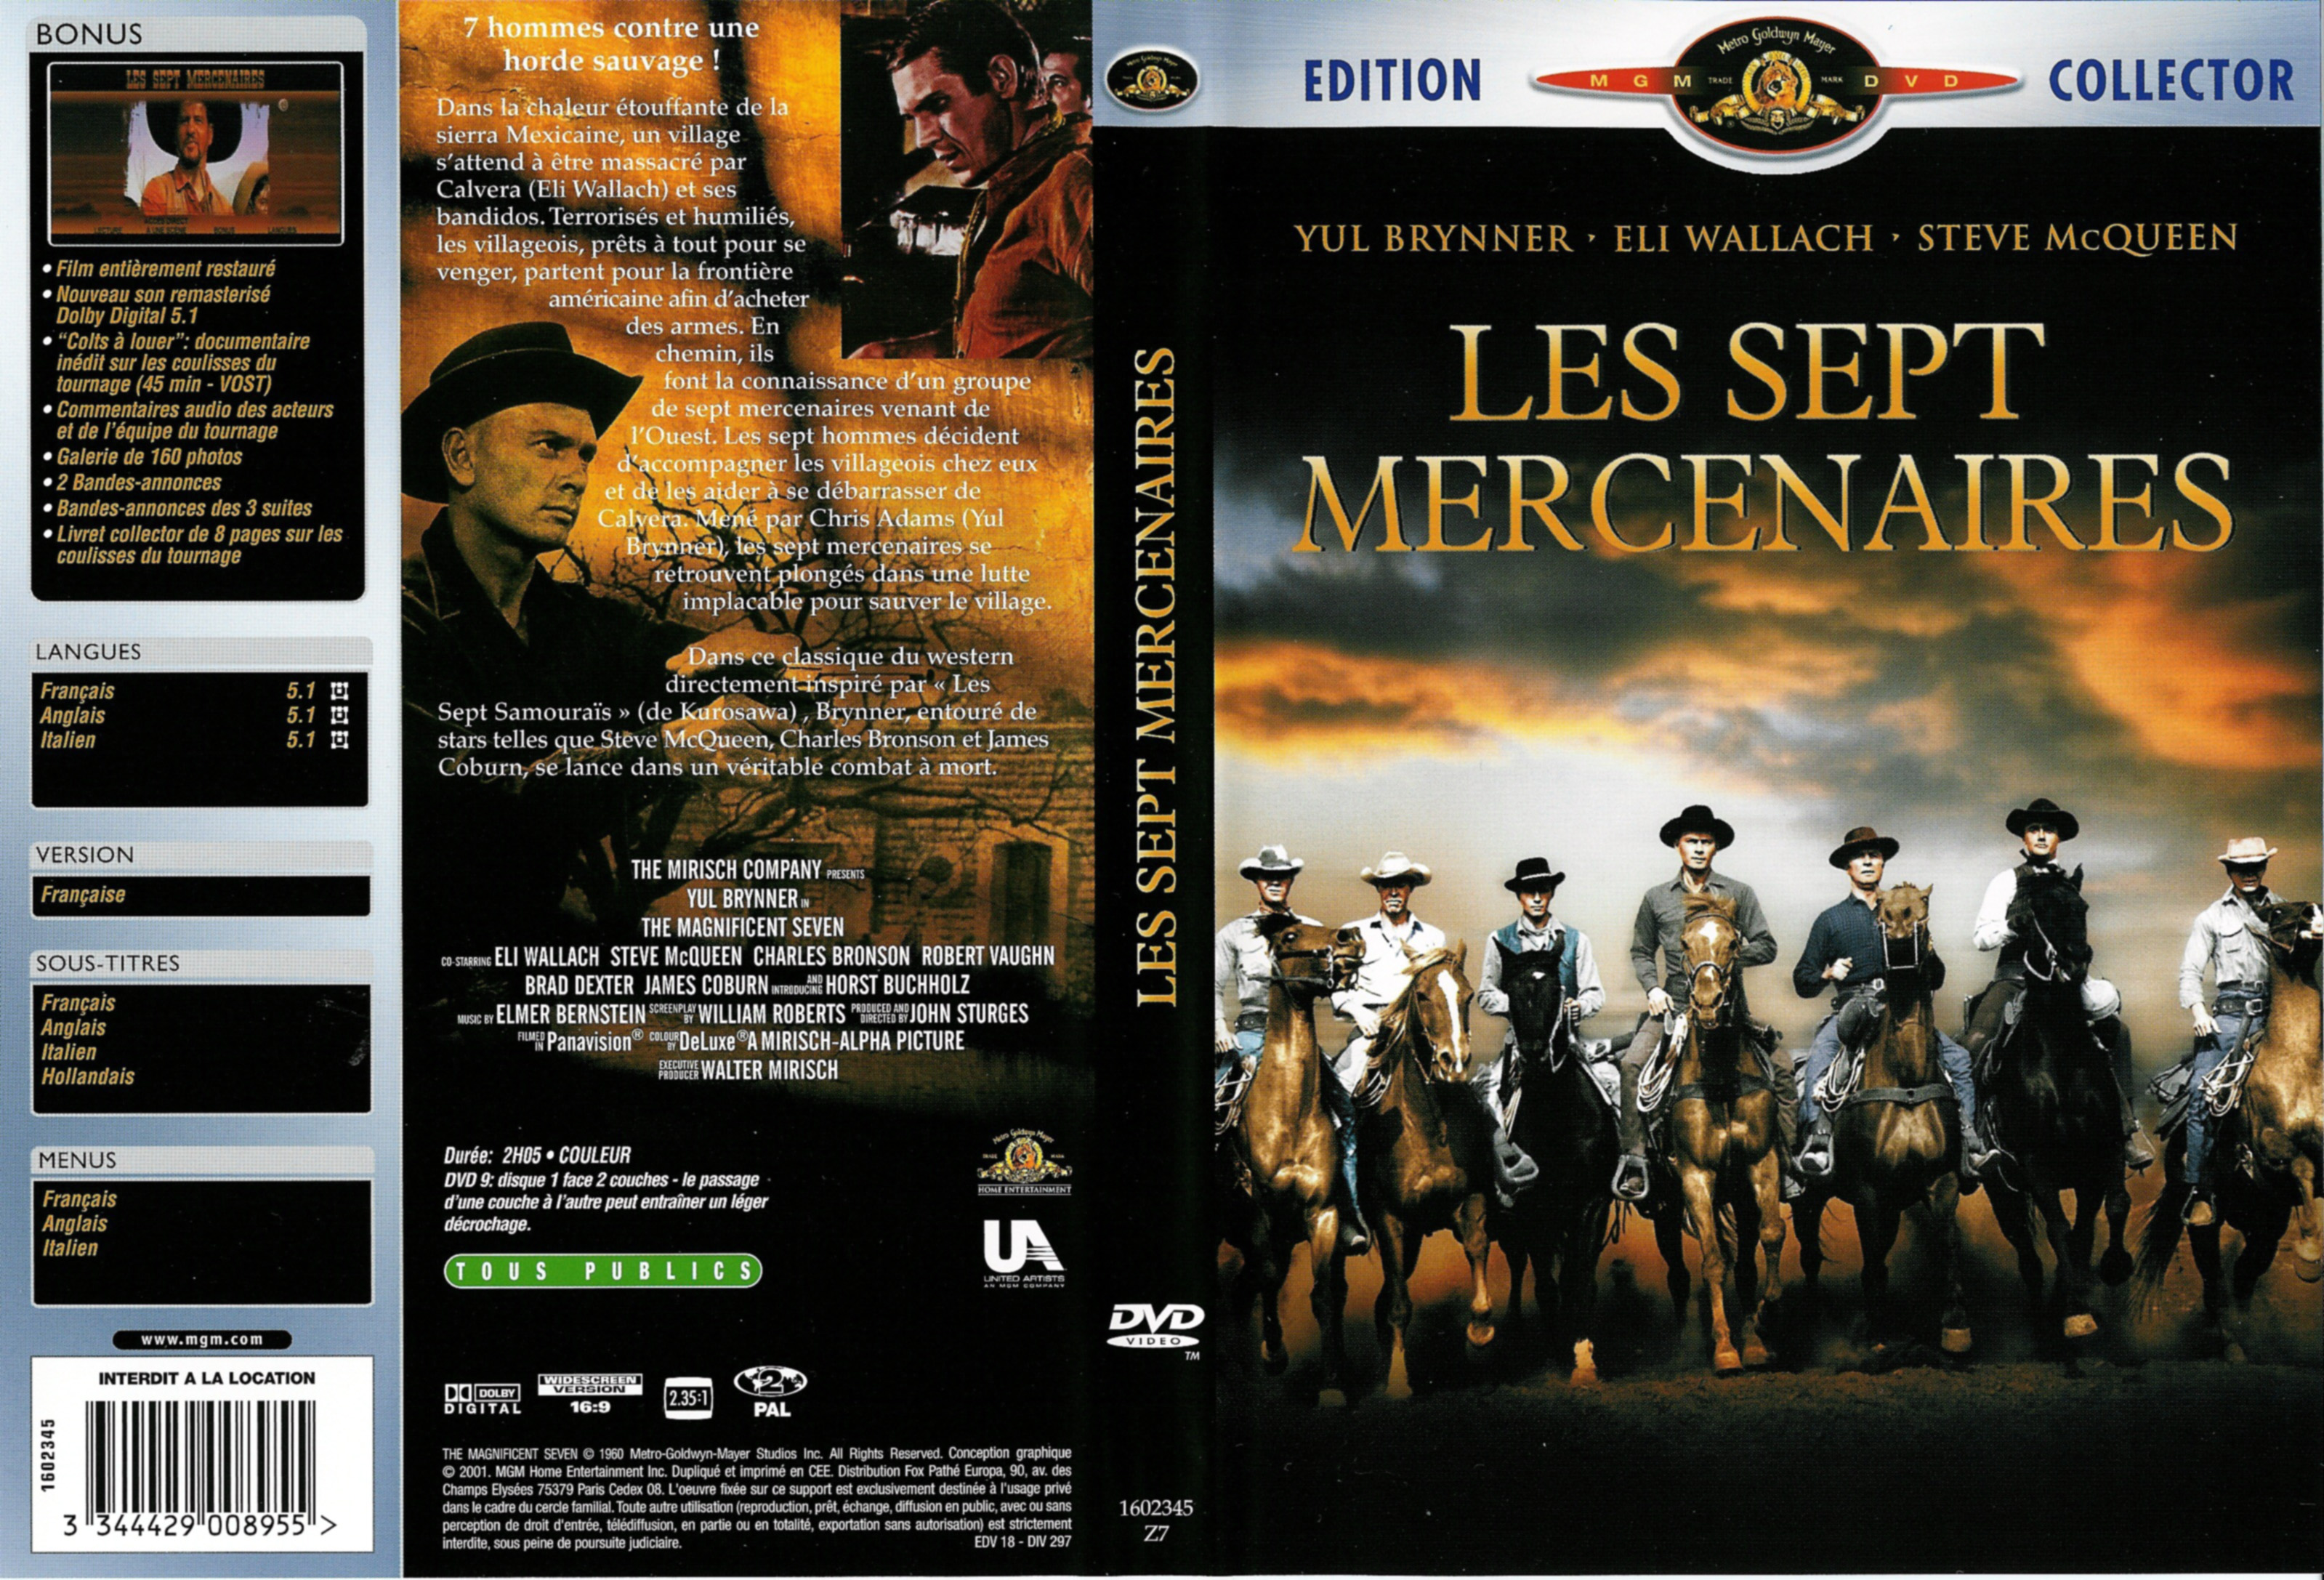 Jaquette DVD Les sept mercenaires